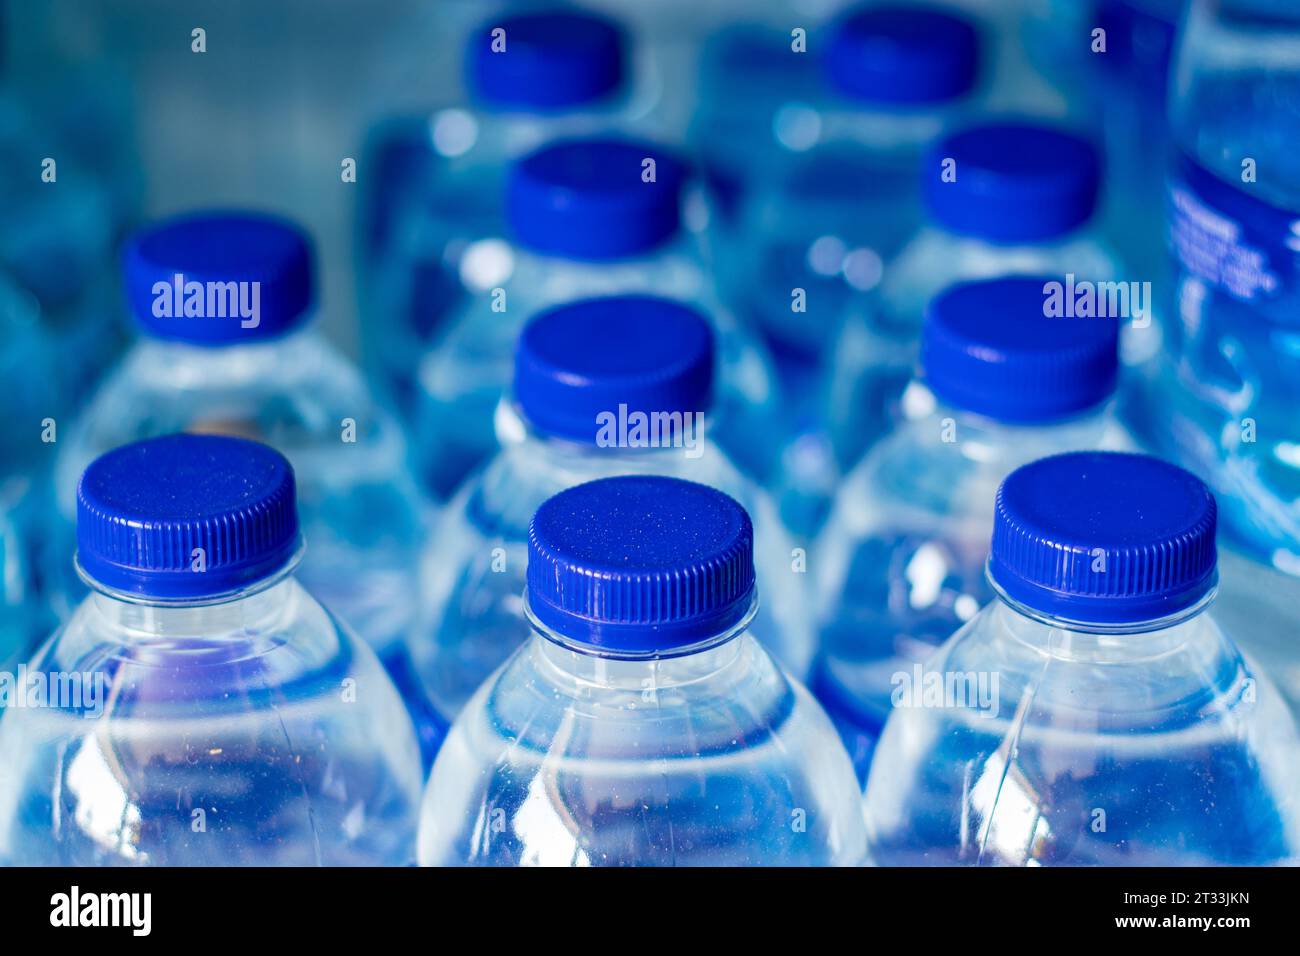 Mineralwasserflaschen in einer Reihe mit blauen Kappen Stockfoto